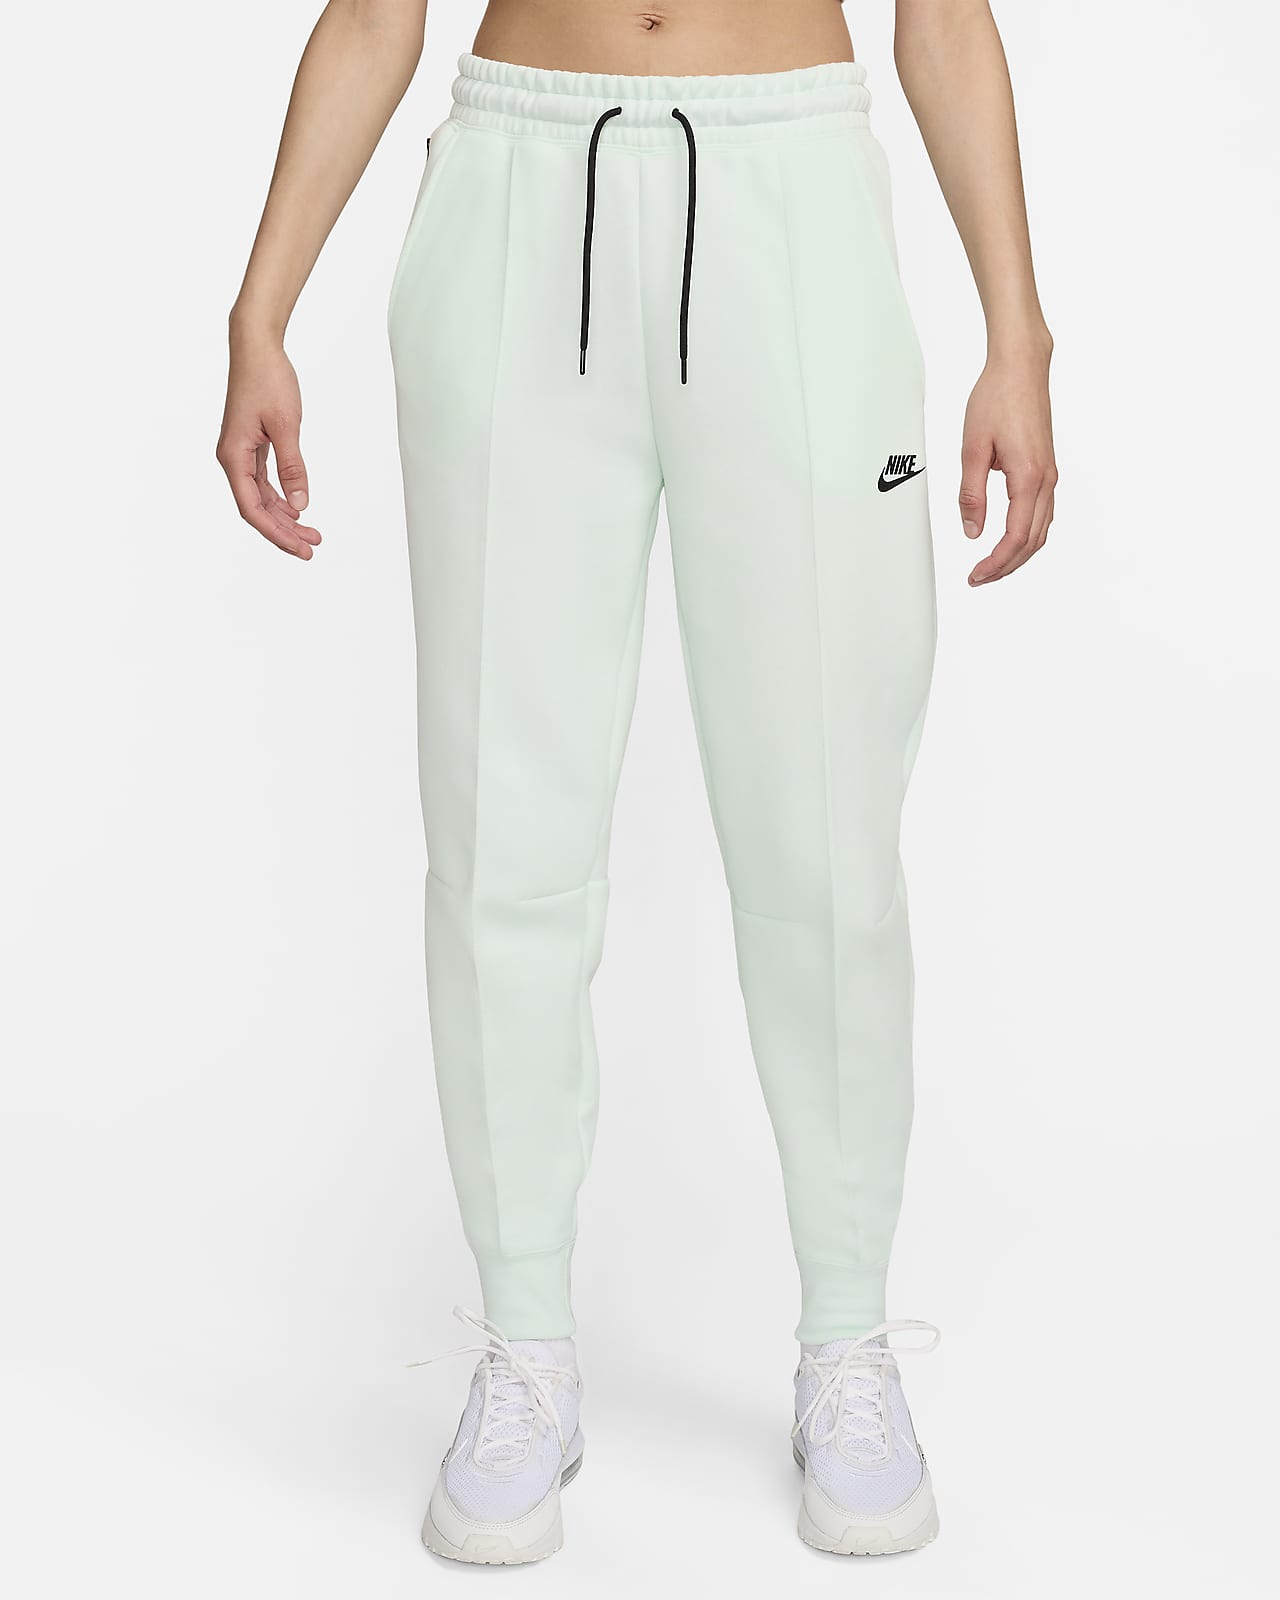 Γυναικείο παντελόνι φόρμας μεσαίου ύψους Nike Sportswear Tech Fleece